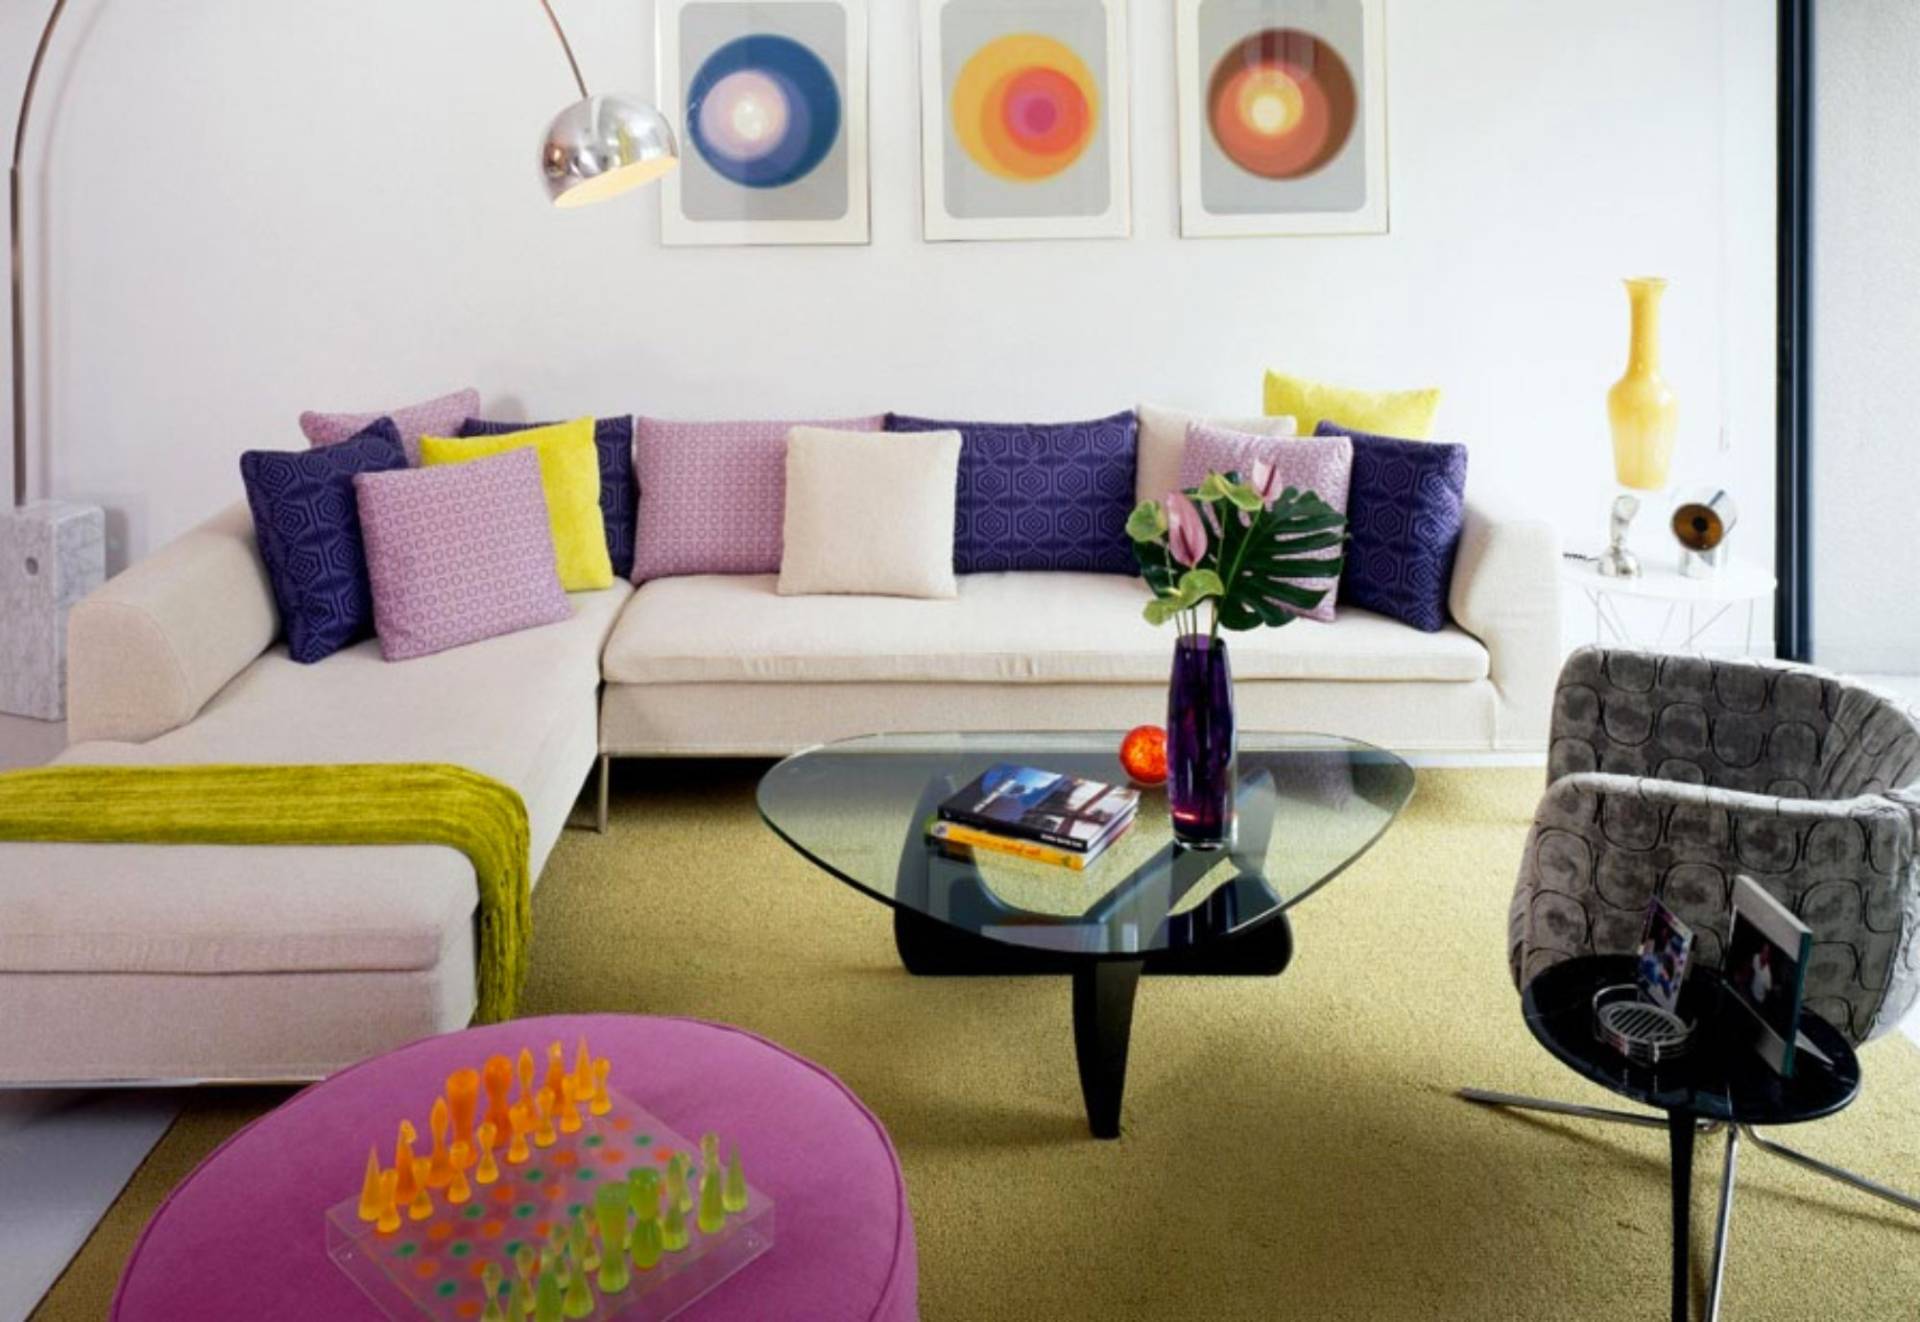 Стиль ретро в интерьере > 50 фото идей для ретро дизайна интерьера в квартирах и домах